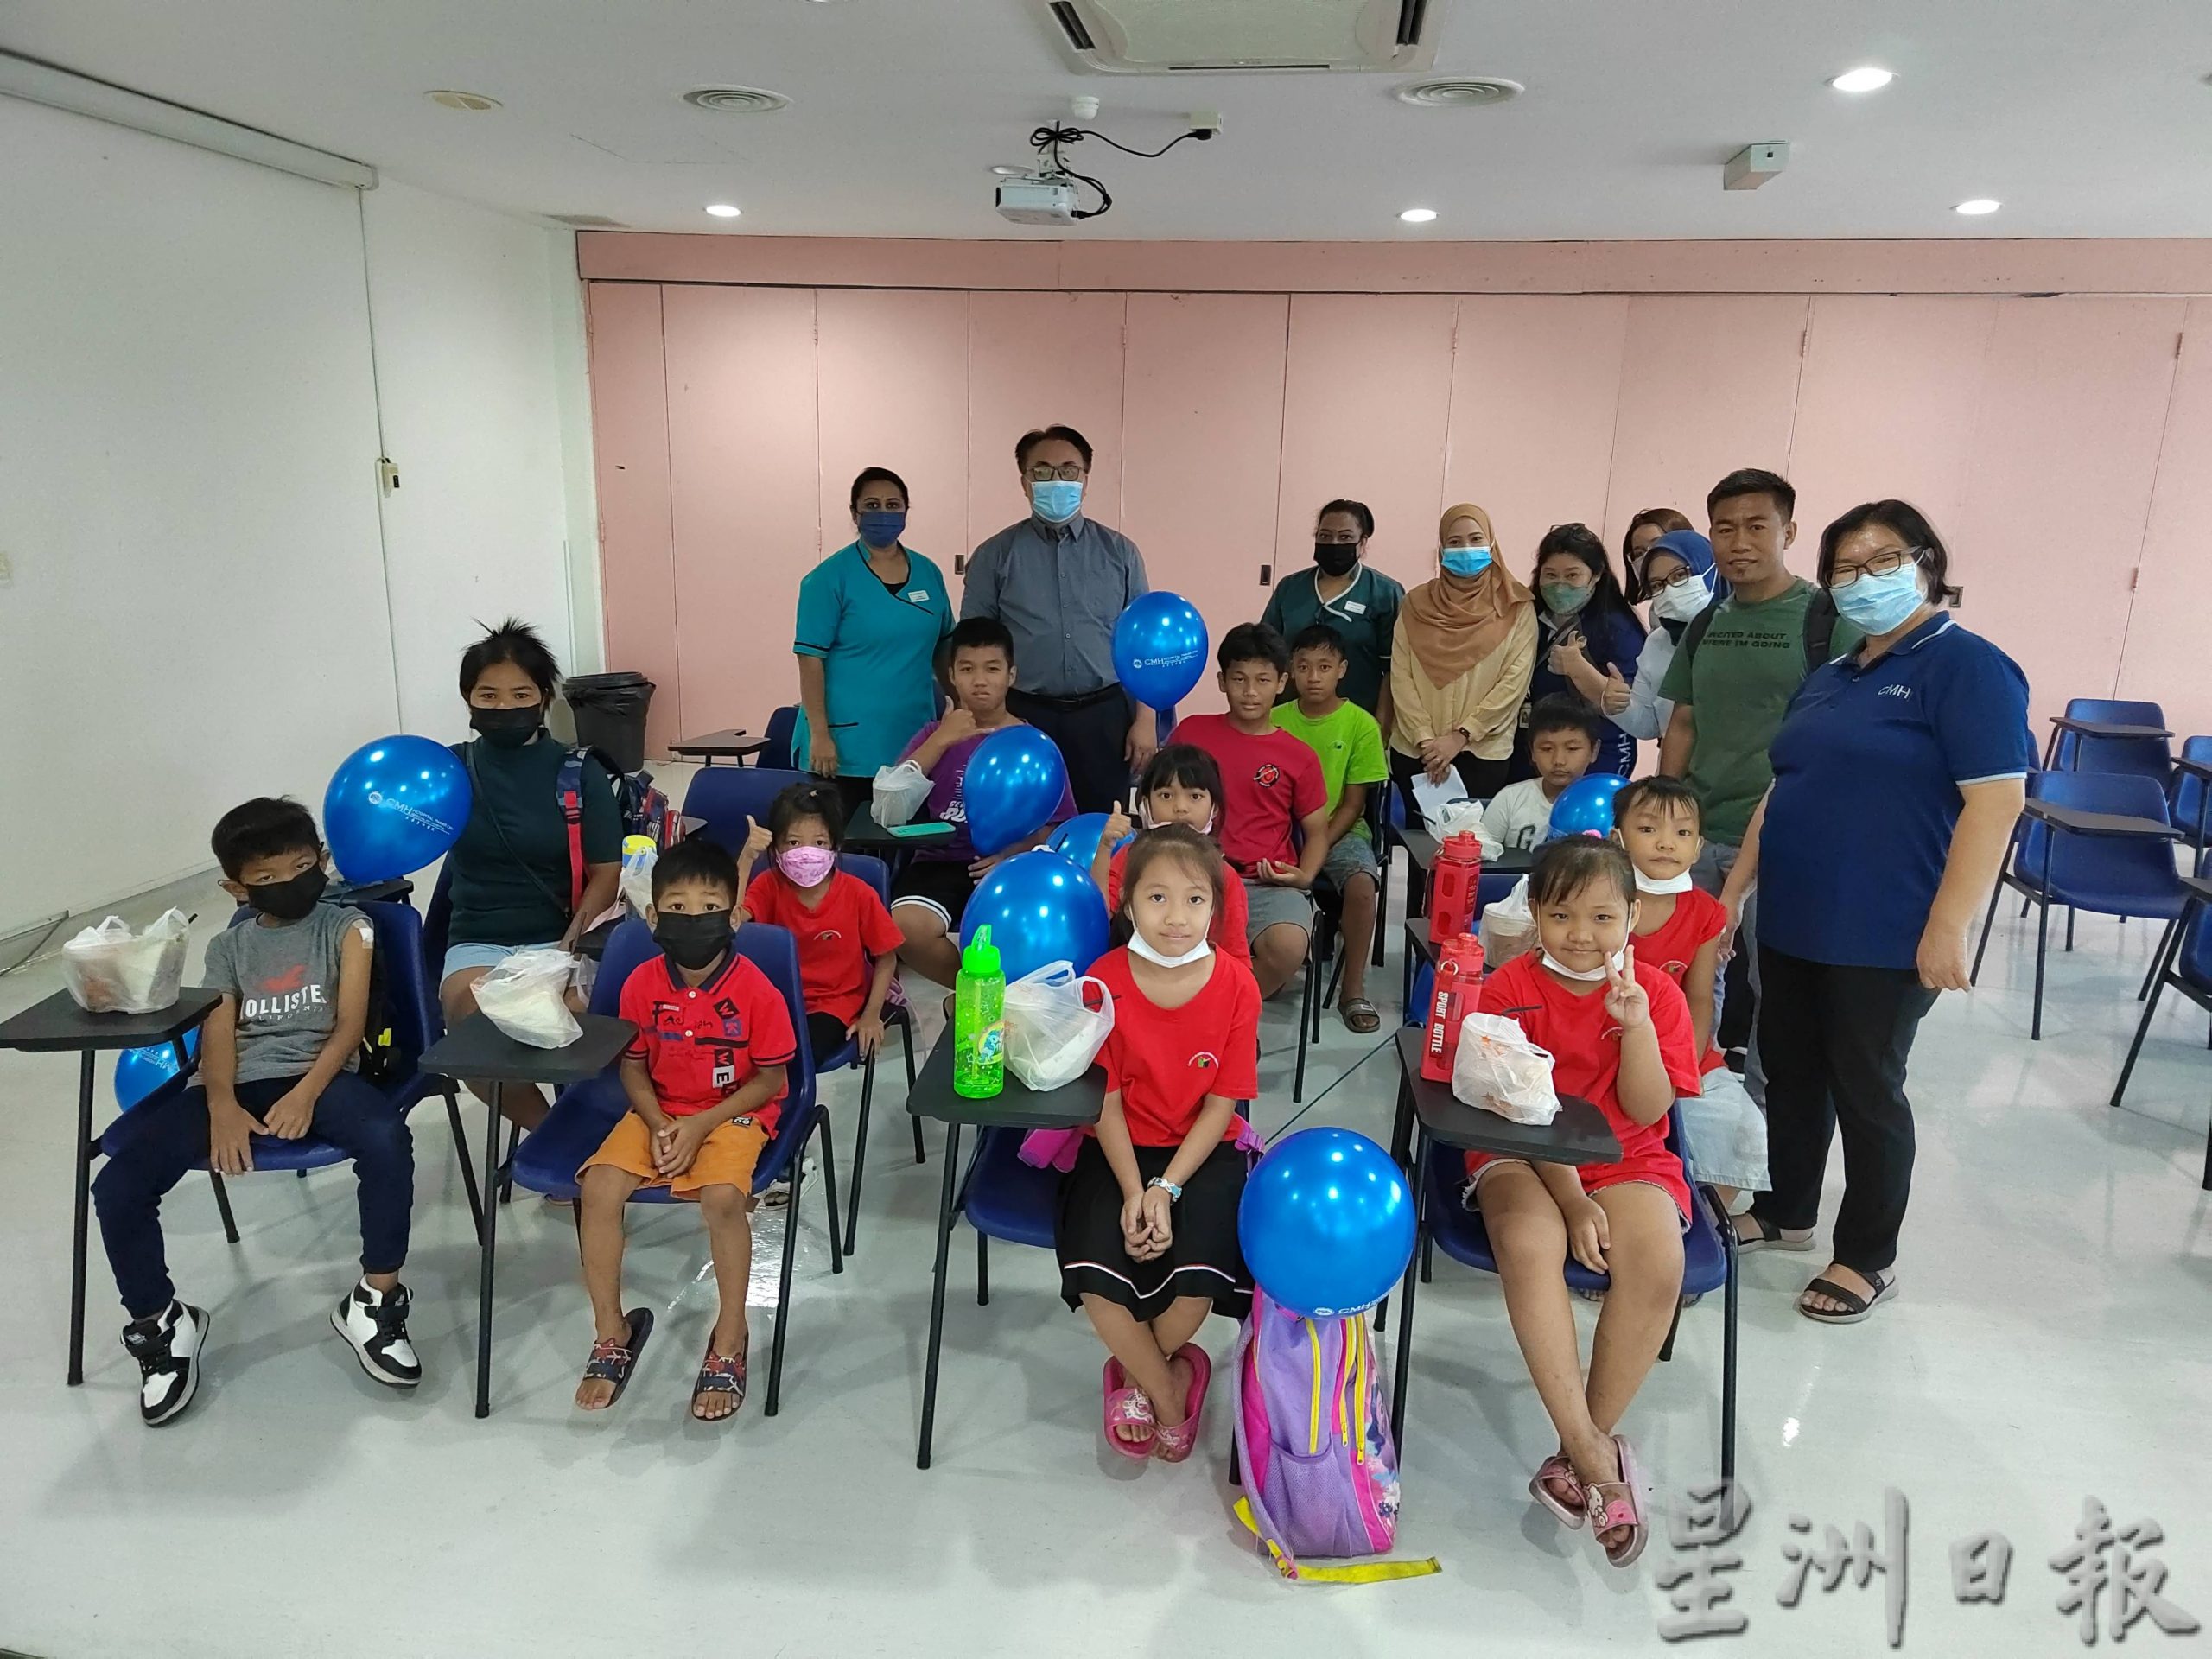 NS芙蓉／森华人接生会为43缅甸难民儿童及3老师守护健康